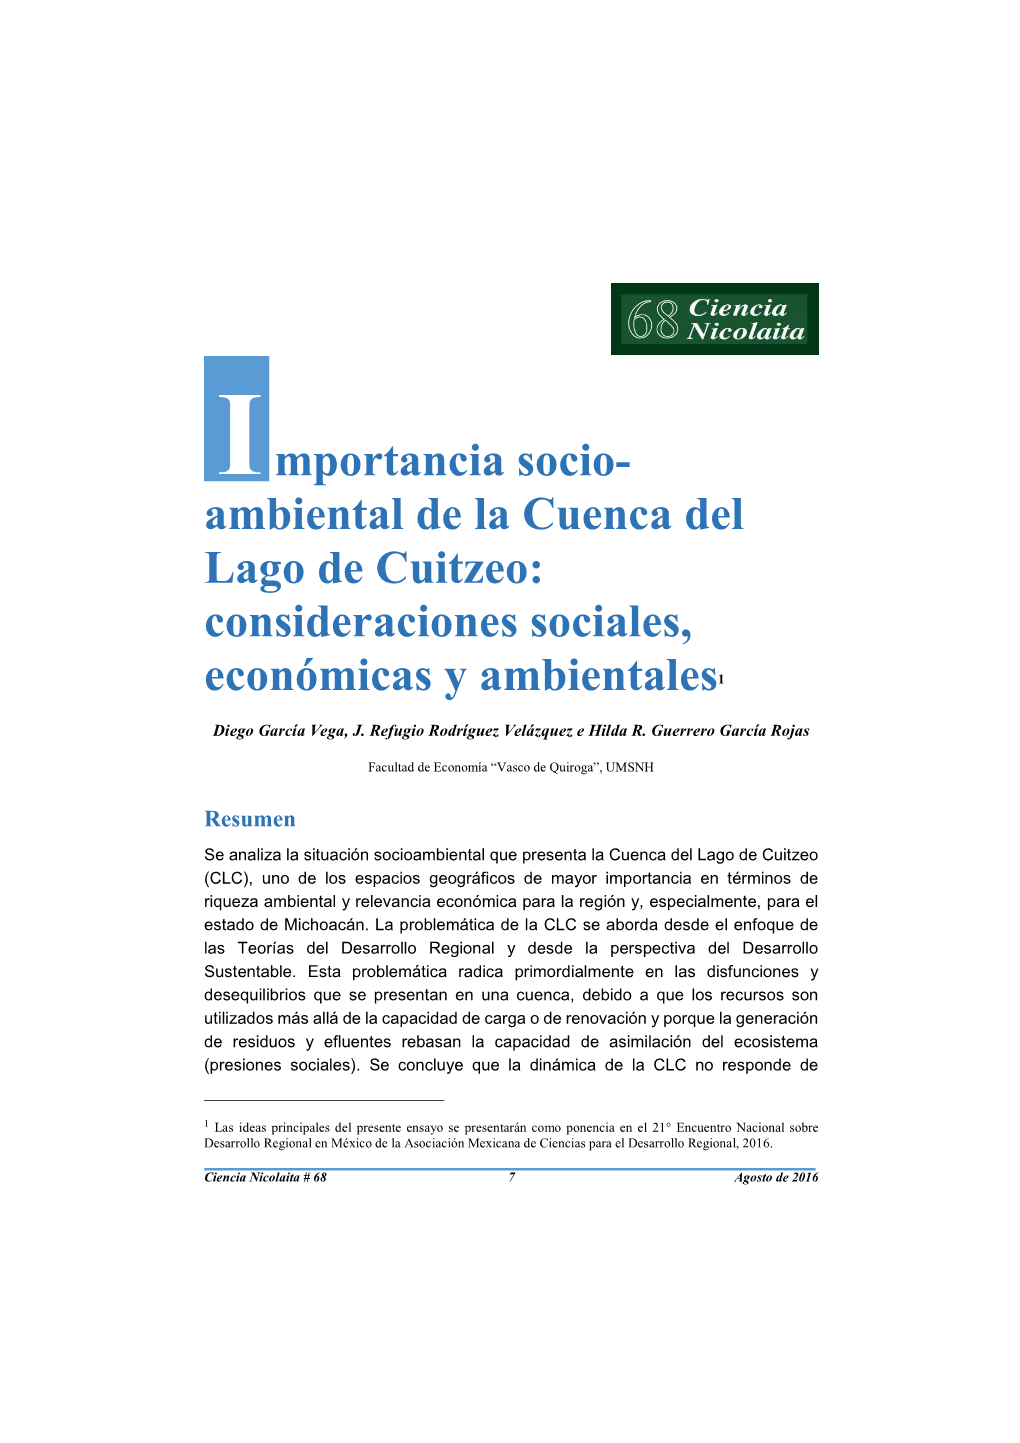 I Mportancia Socio- Ambiental De La Cuenca Del Lago De Cuitzeo: Consideraciones Sociales, Económicas Y Ambientales 1